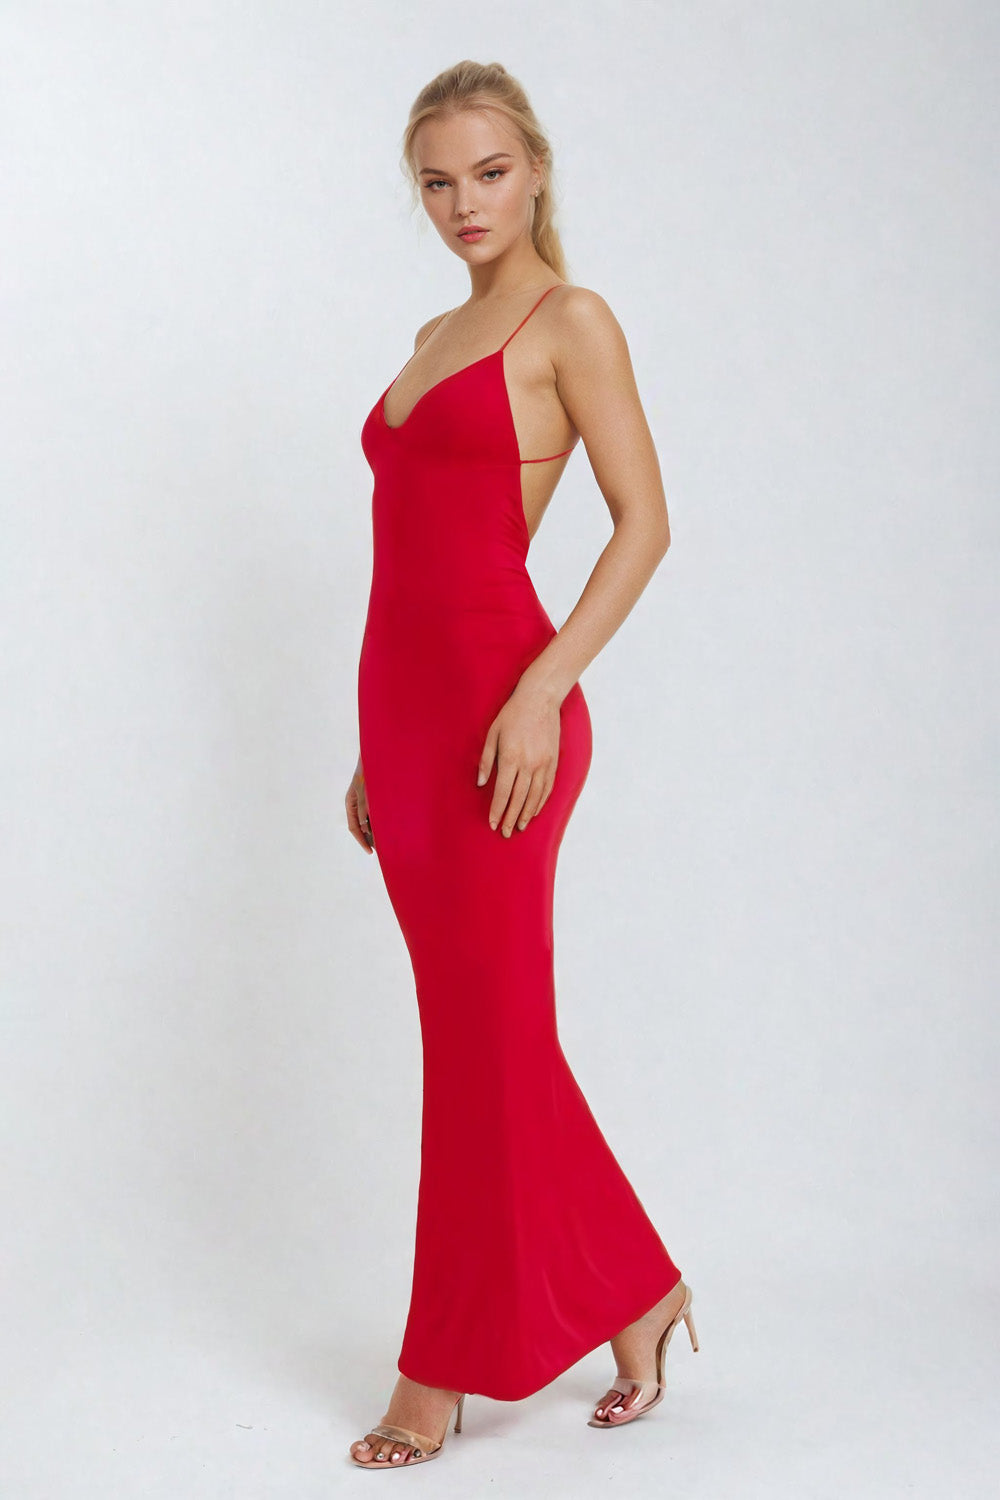 Tailliertes rückenfreies Kleid mit Trägern - Rot